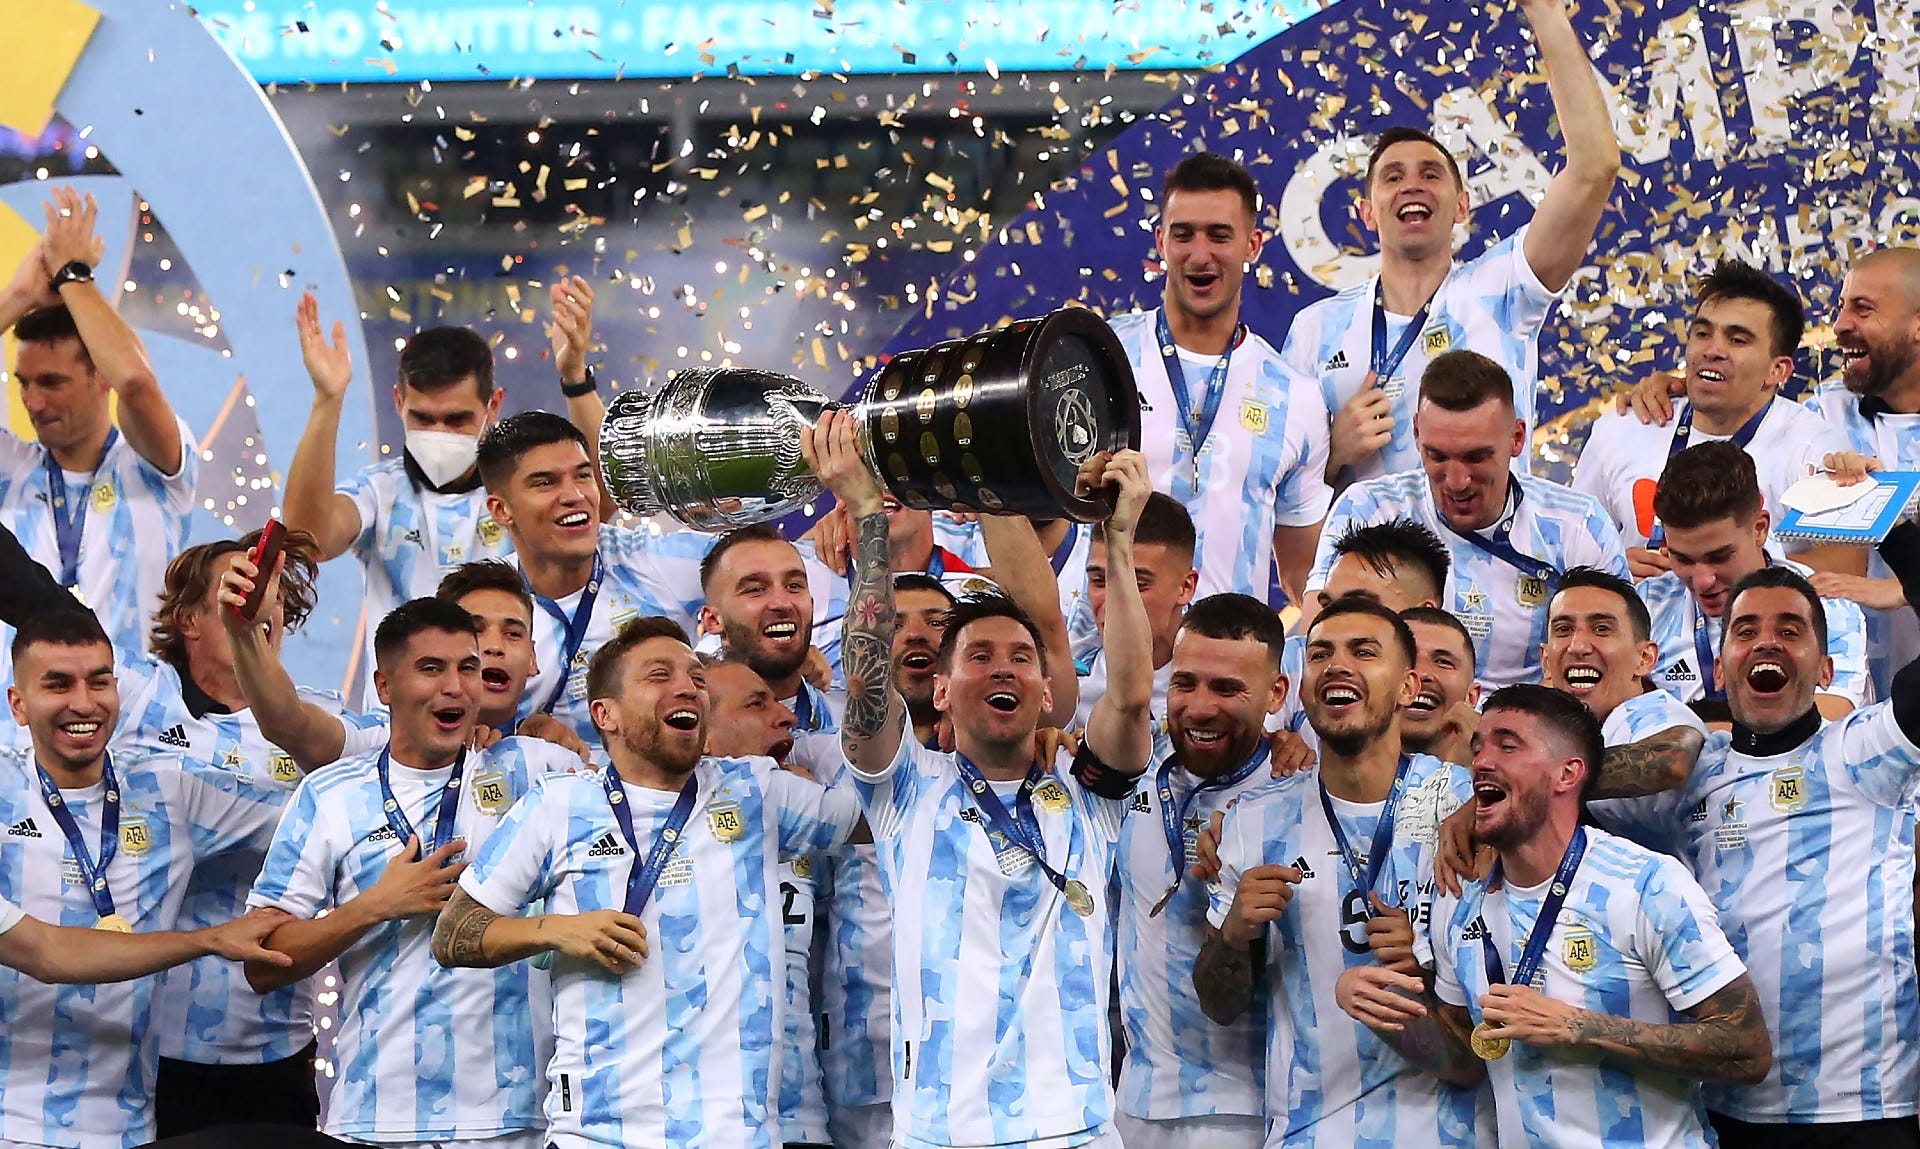 アルゼンチン代表コパアメリカ2021決勝 オーセンティックユニフォーム 